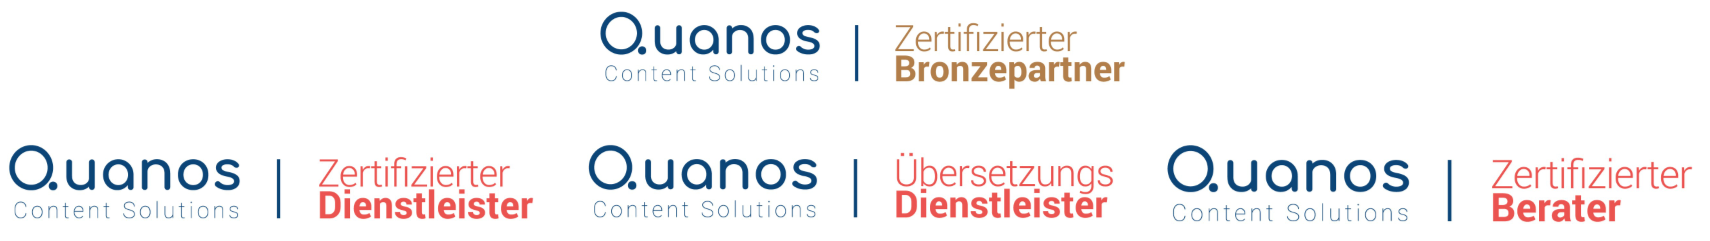 STYRZ Bronzepartner der Quanos-Content-Solutions und Schema ST4 Experte